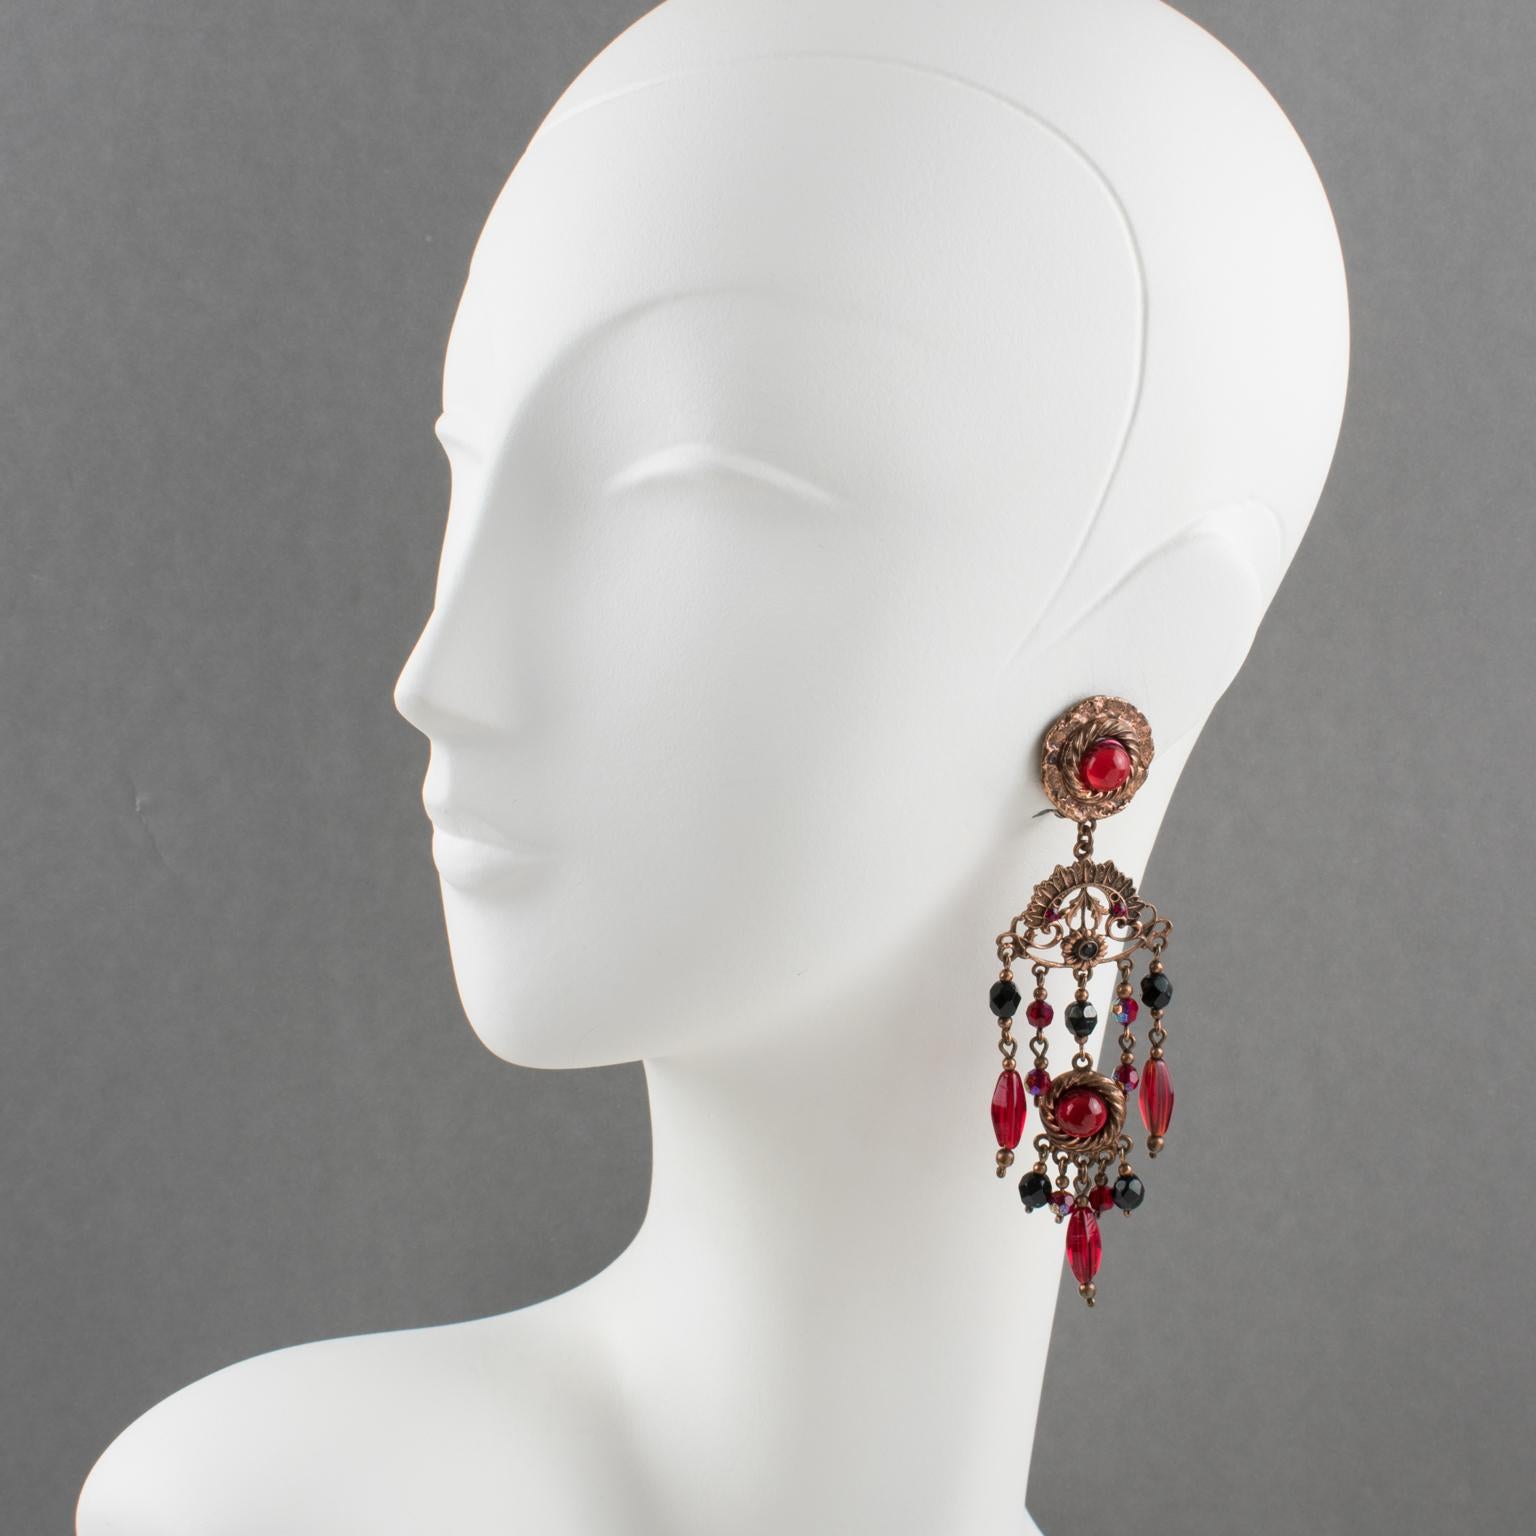 Ces fabuleuses boucles d'oreilles baroques à clip du créateur de bijoux français Henry Perichon (alias Henry) présentent une forme pendante extra longue en métal cuivré dans une inspiration victorienne ornée de perles de cristal à facettes rouges et